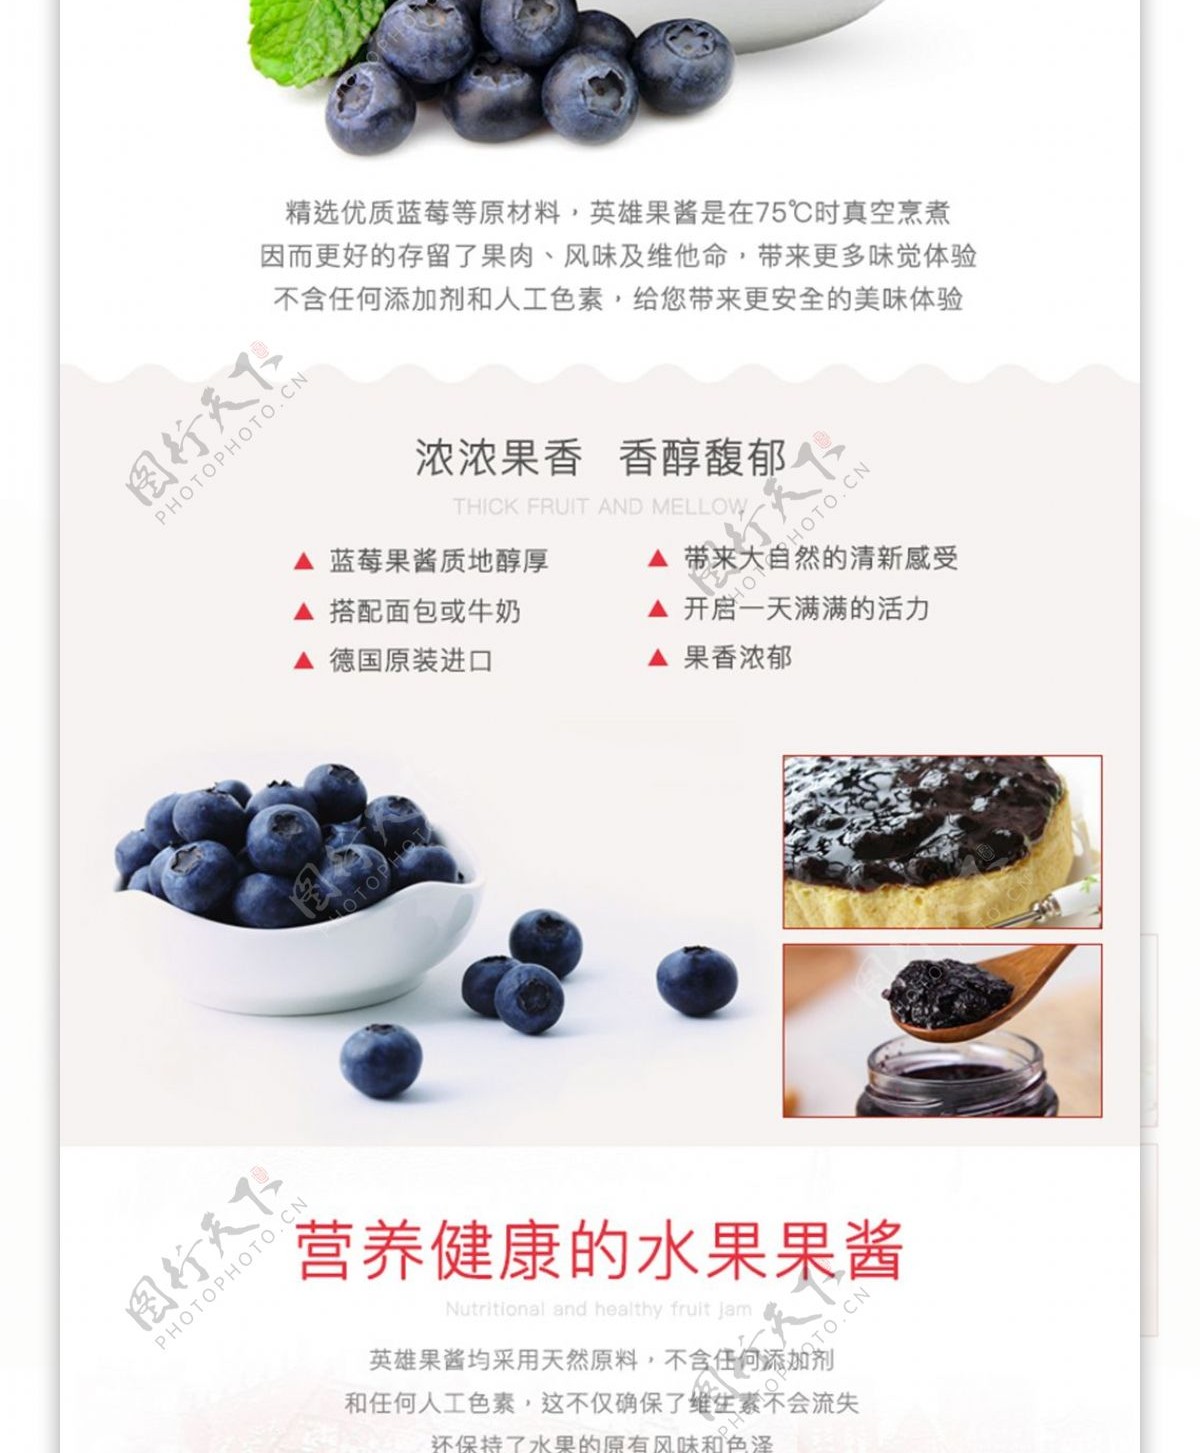 蓝莓果酱美食零食详情页水果